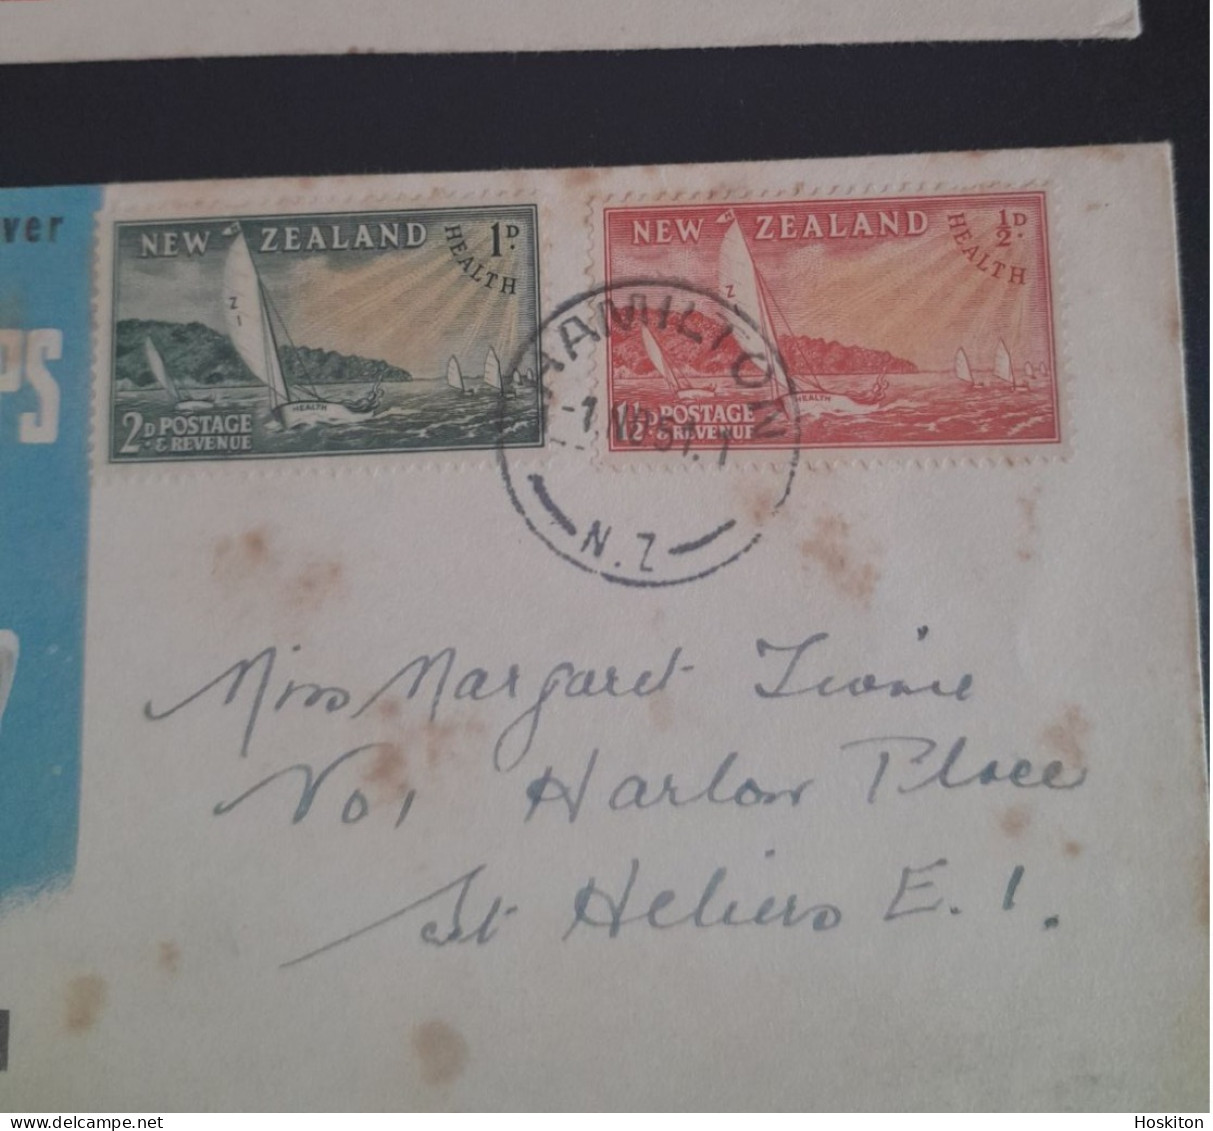 2 Oct 1950 ,1 Nov 1951 Health Stamps Send Children To Health Camps - Brieven En Documenten